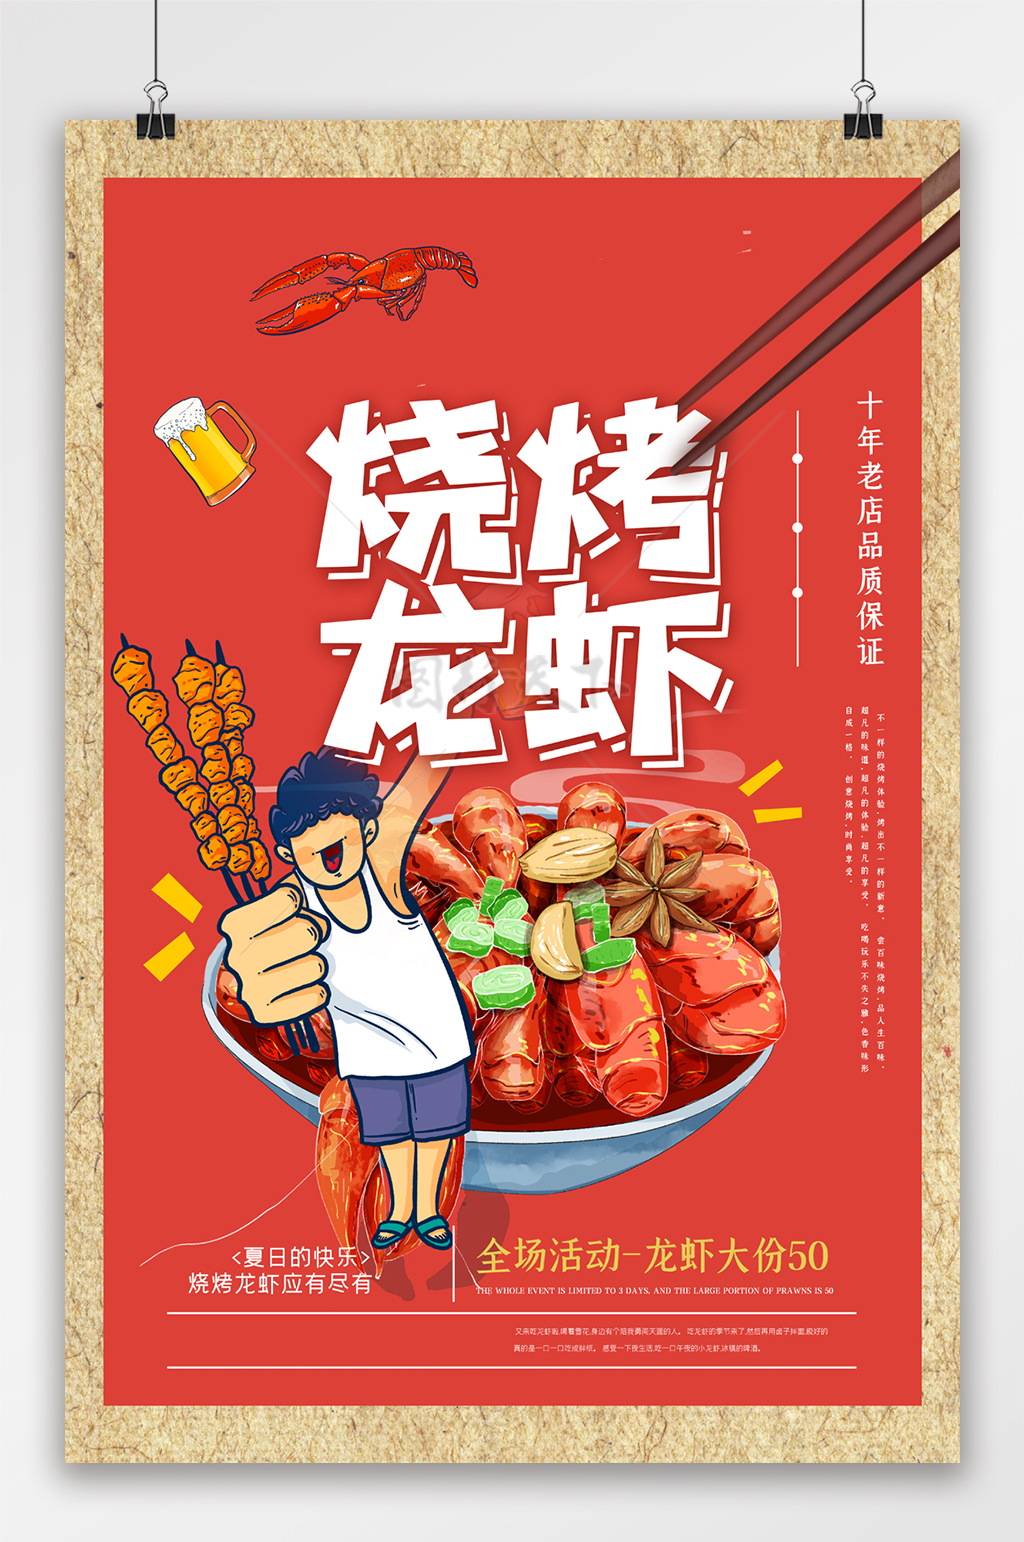 夏日烧烤美食宣传促销海报设计